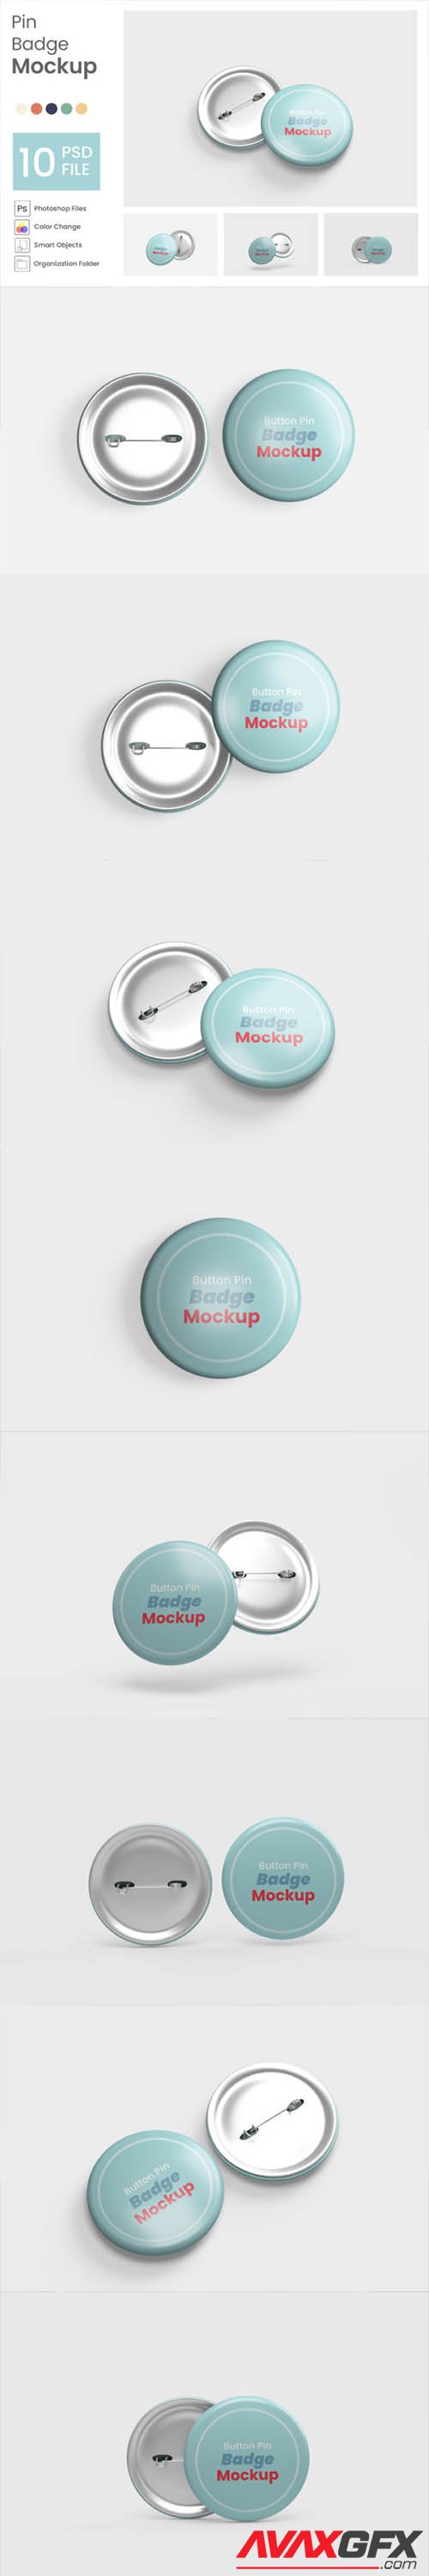 Pin Badge Mockup